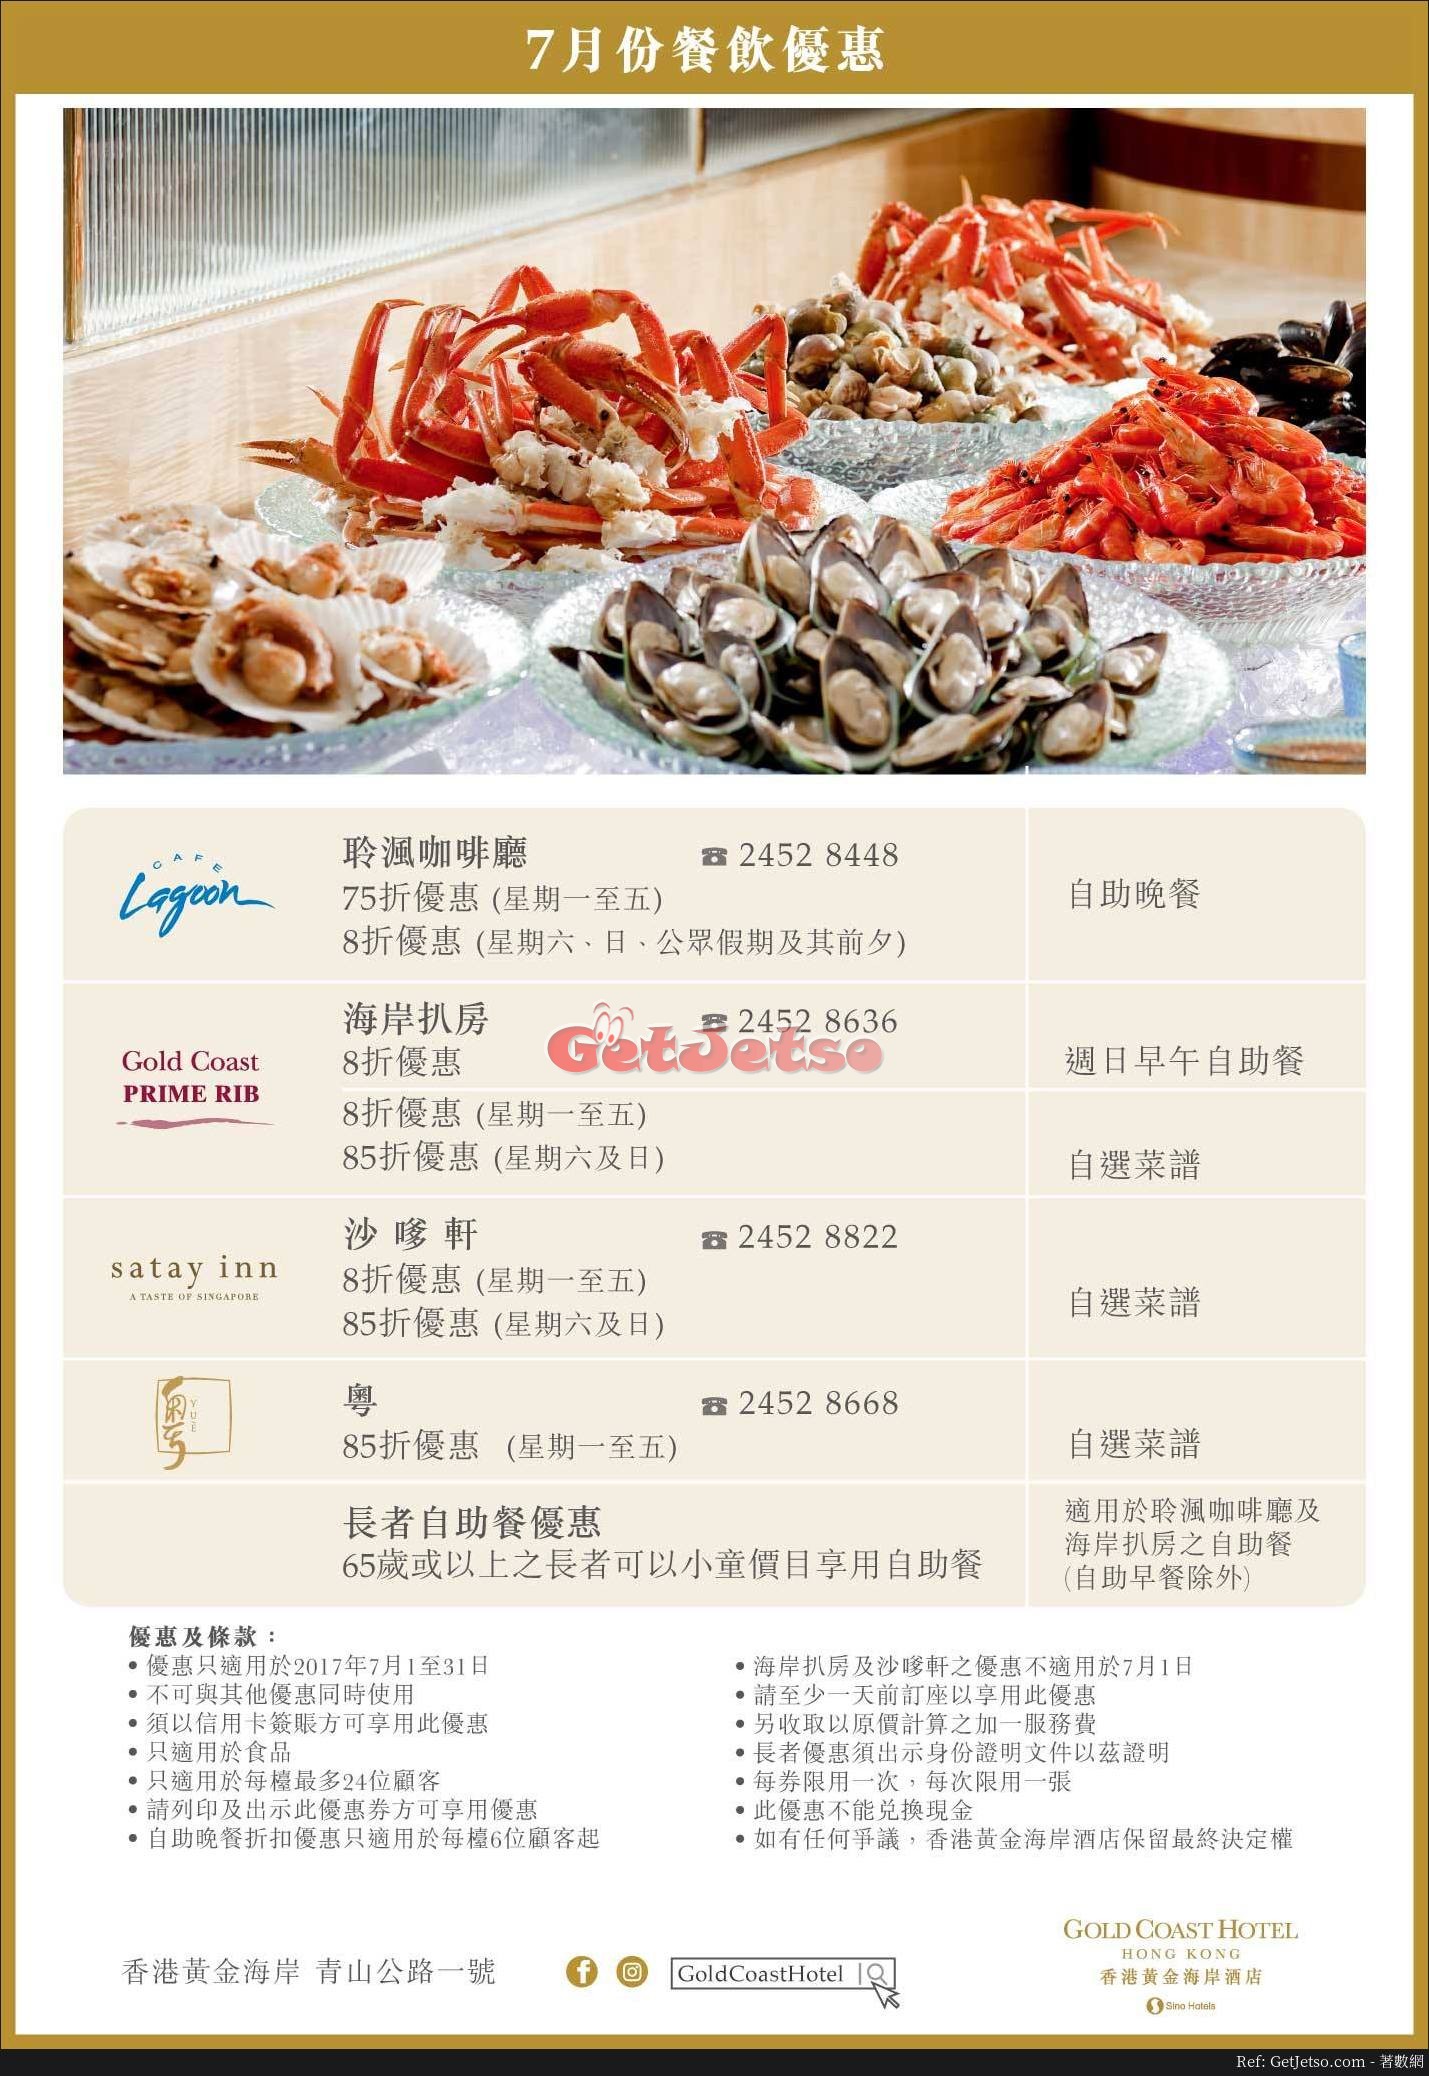 香港黃金海岸酒店7月份餐飲自助餐優惠(至17年7月31日)圖片1